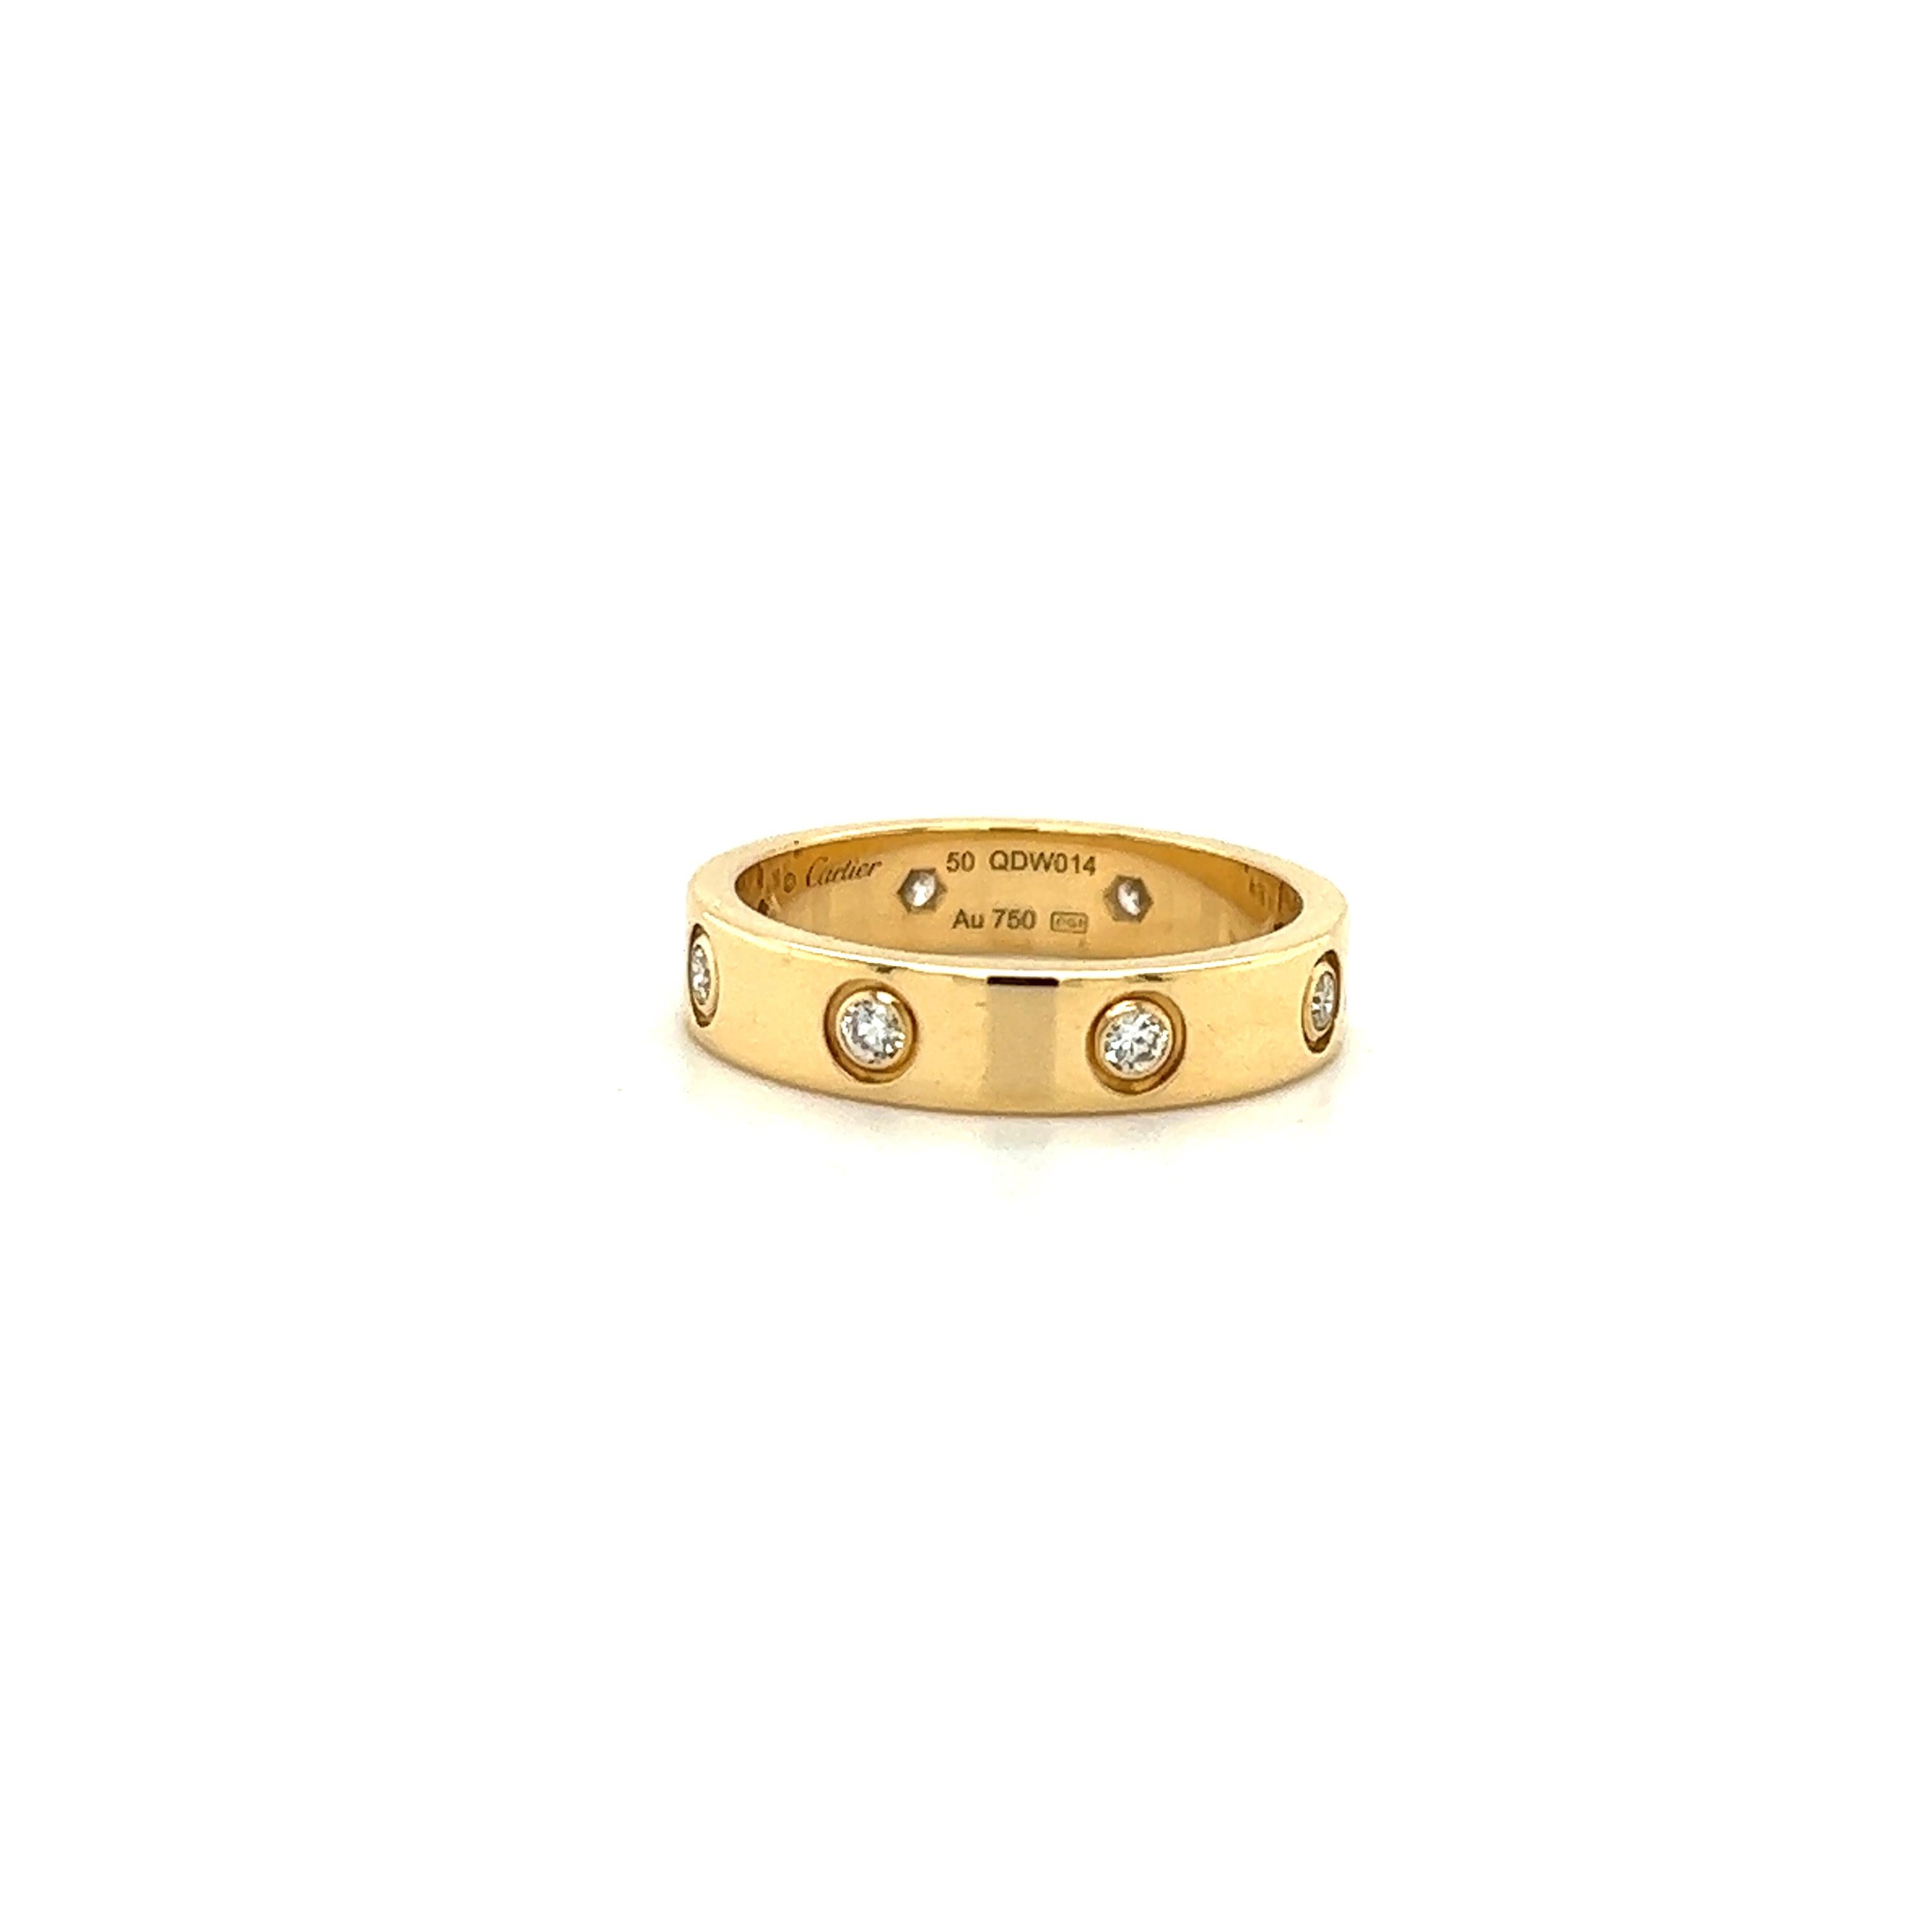 Schöner Ring des famosen Designers Cartier. Dieses ikonische Design aus der Love Collection ist in 18 Karat Gelbgold gefertigt. Der Ring ist mit 8 Diamanten besetzt, was dem Design ein Gesamtkaratgewicht von 0,19 ct verleiht. Die Diamanten sind von